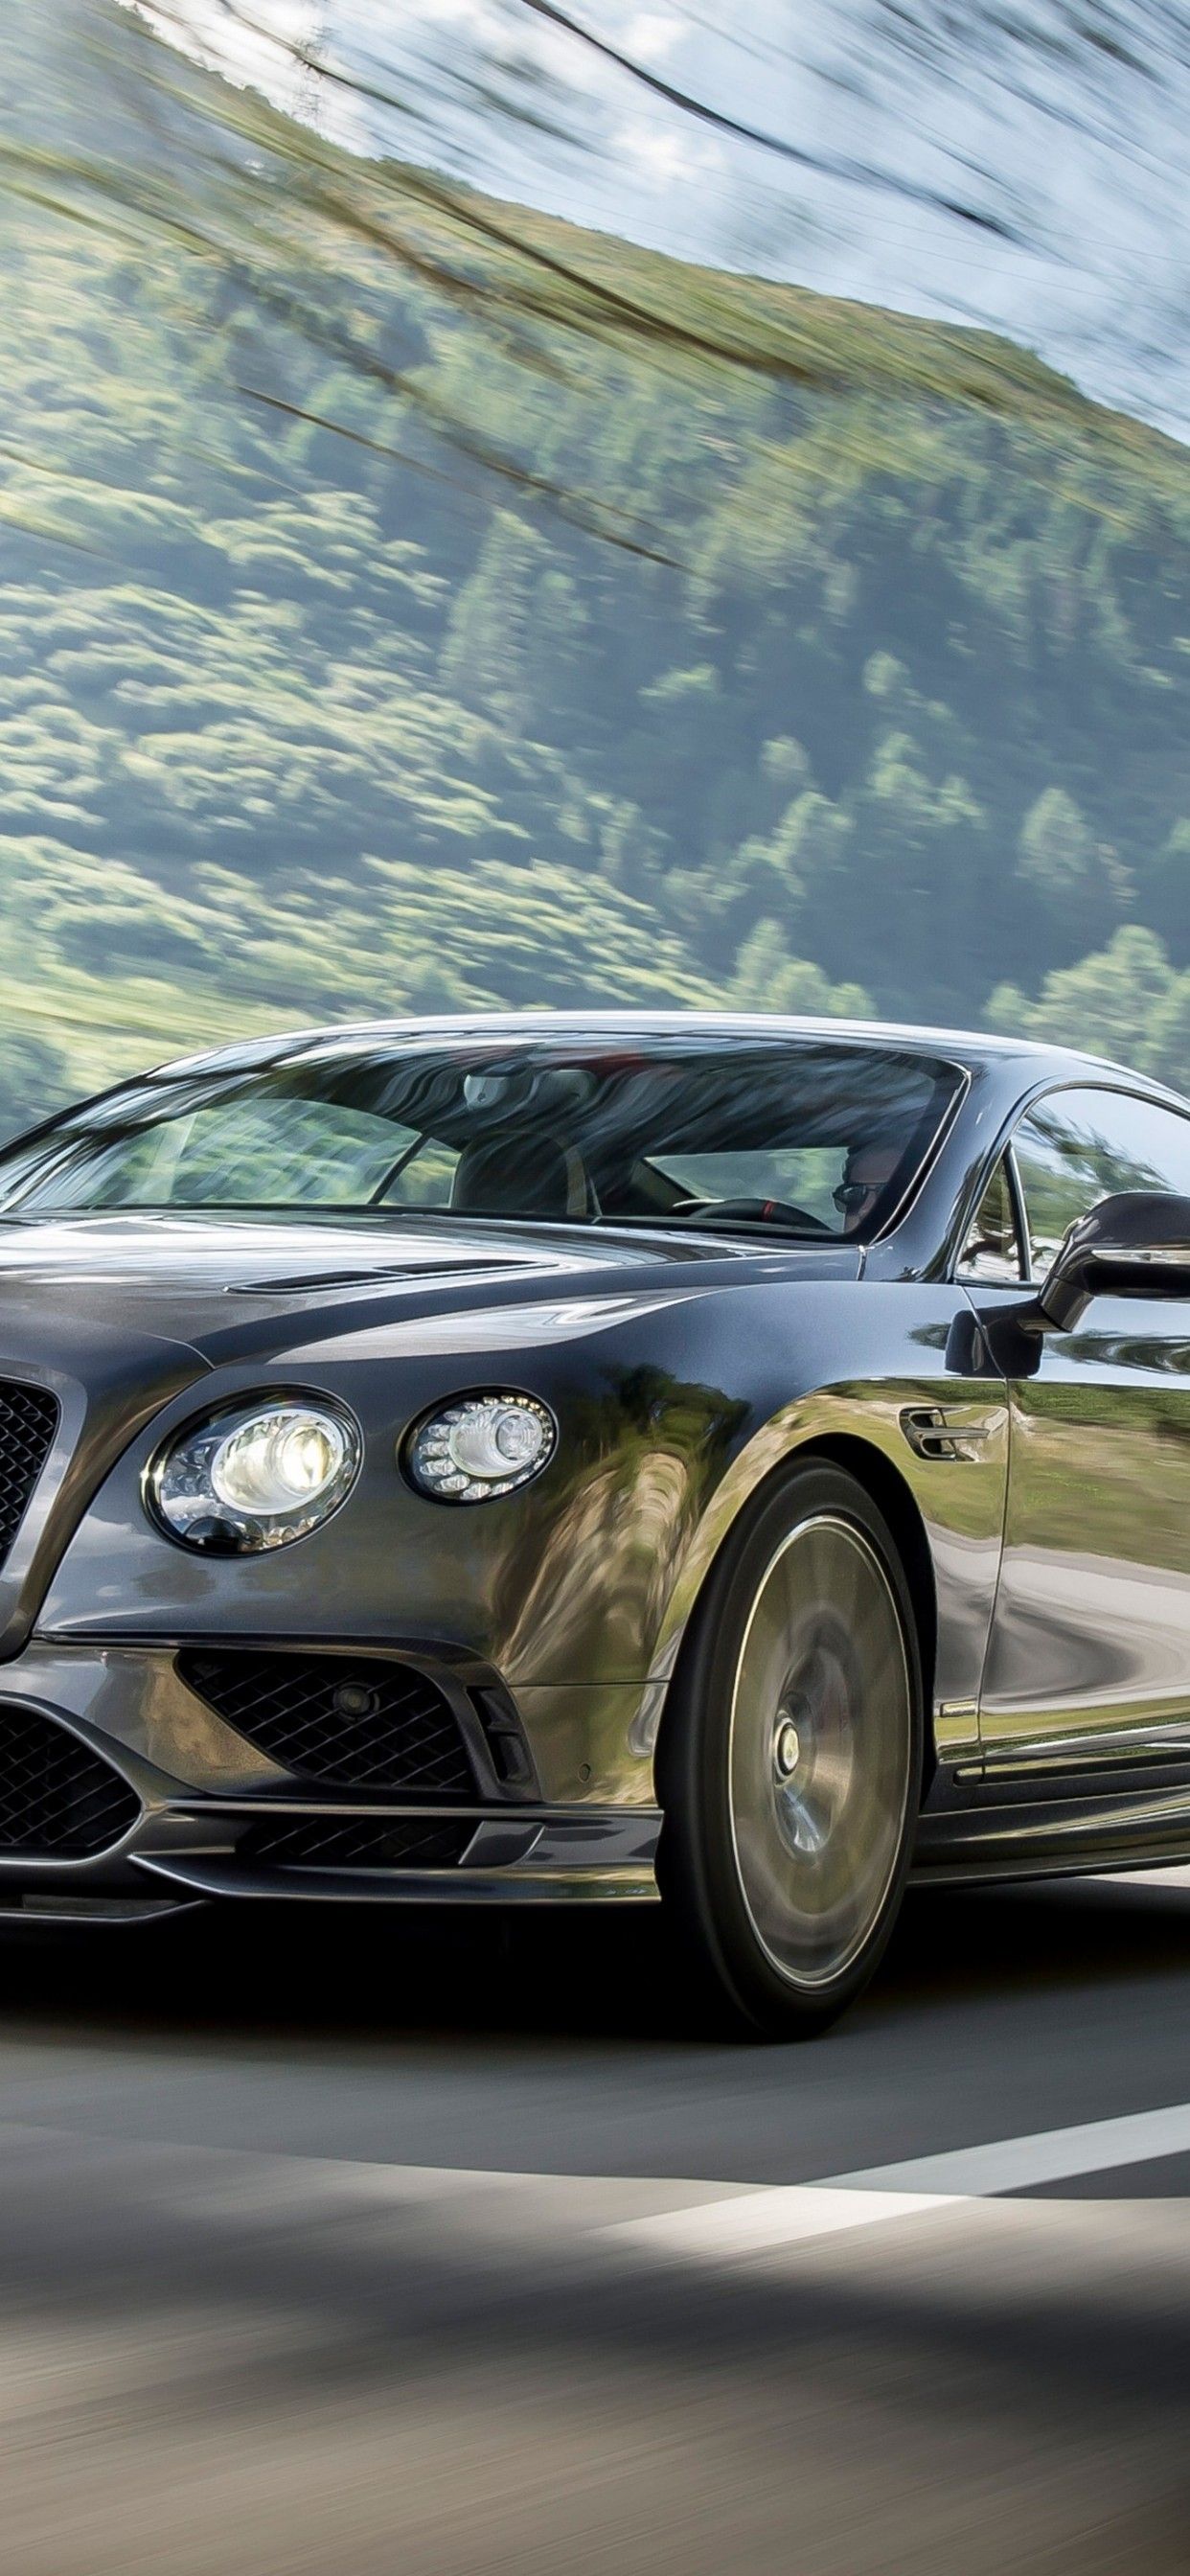 Download 1242x2688 Bentley Continental Gt, Supercar, Cars, Road